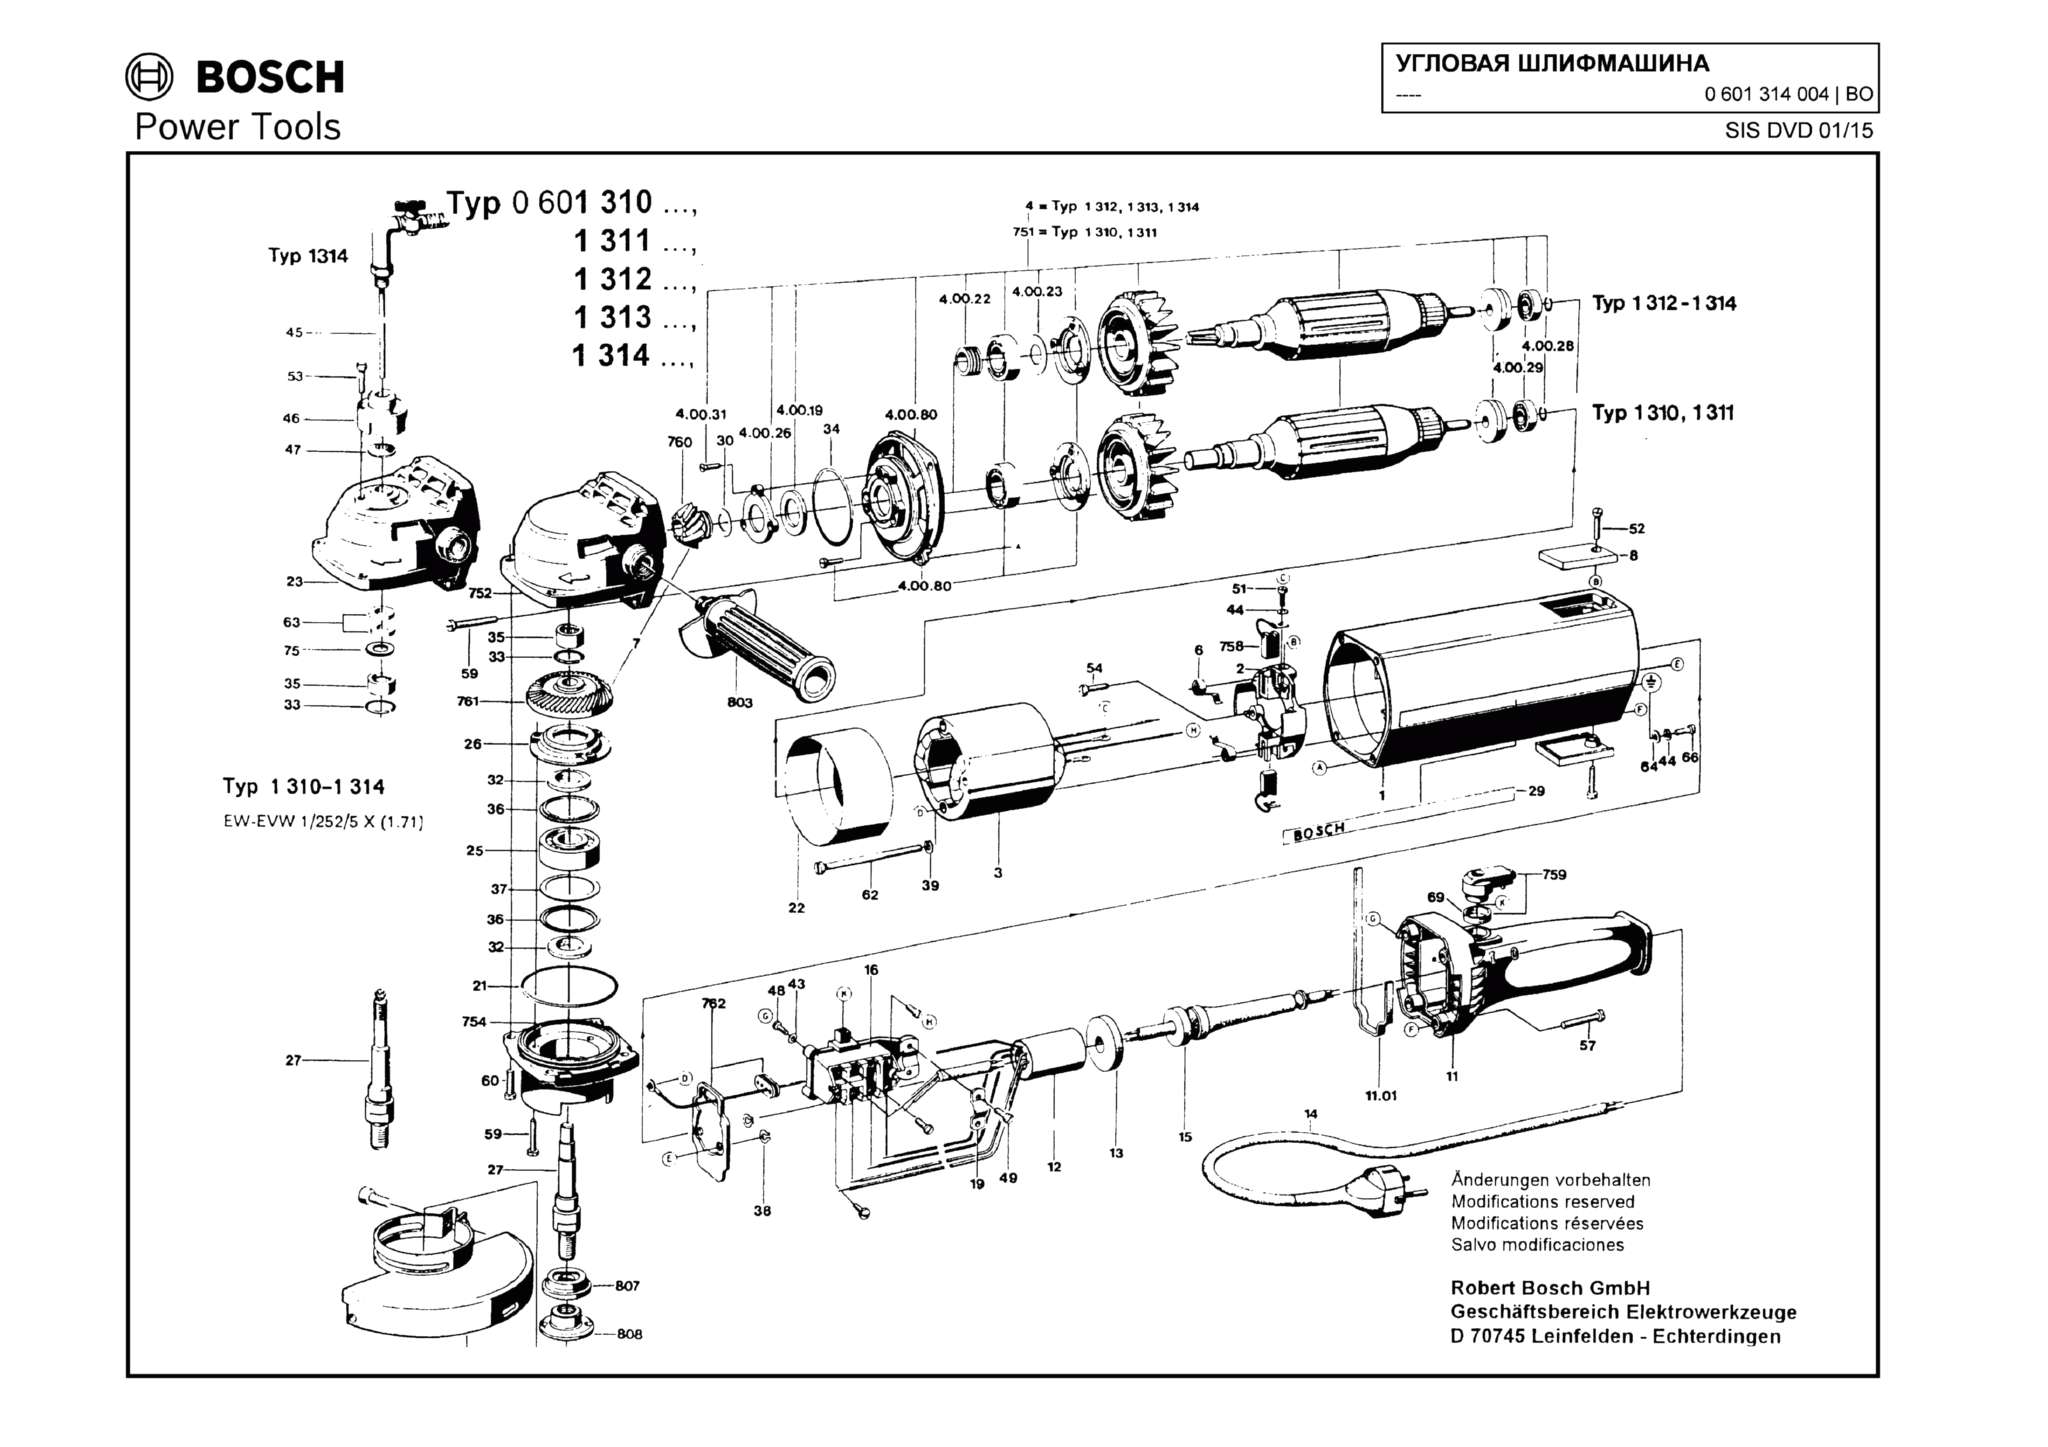 Запчасти, схема и деталировка Bosch (ТИП 0601314004)